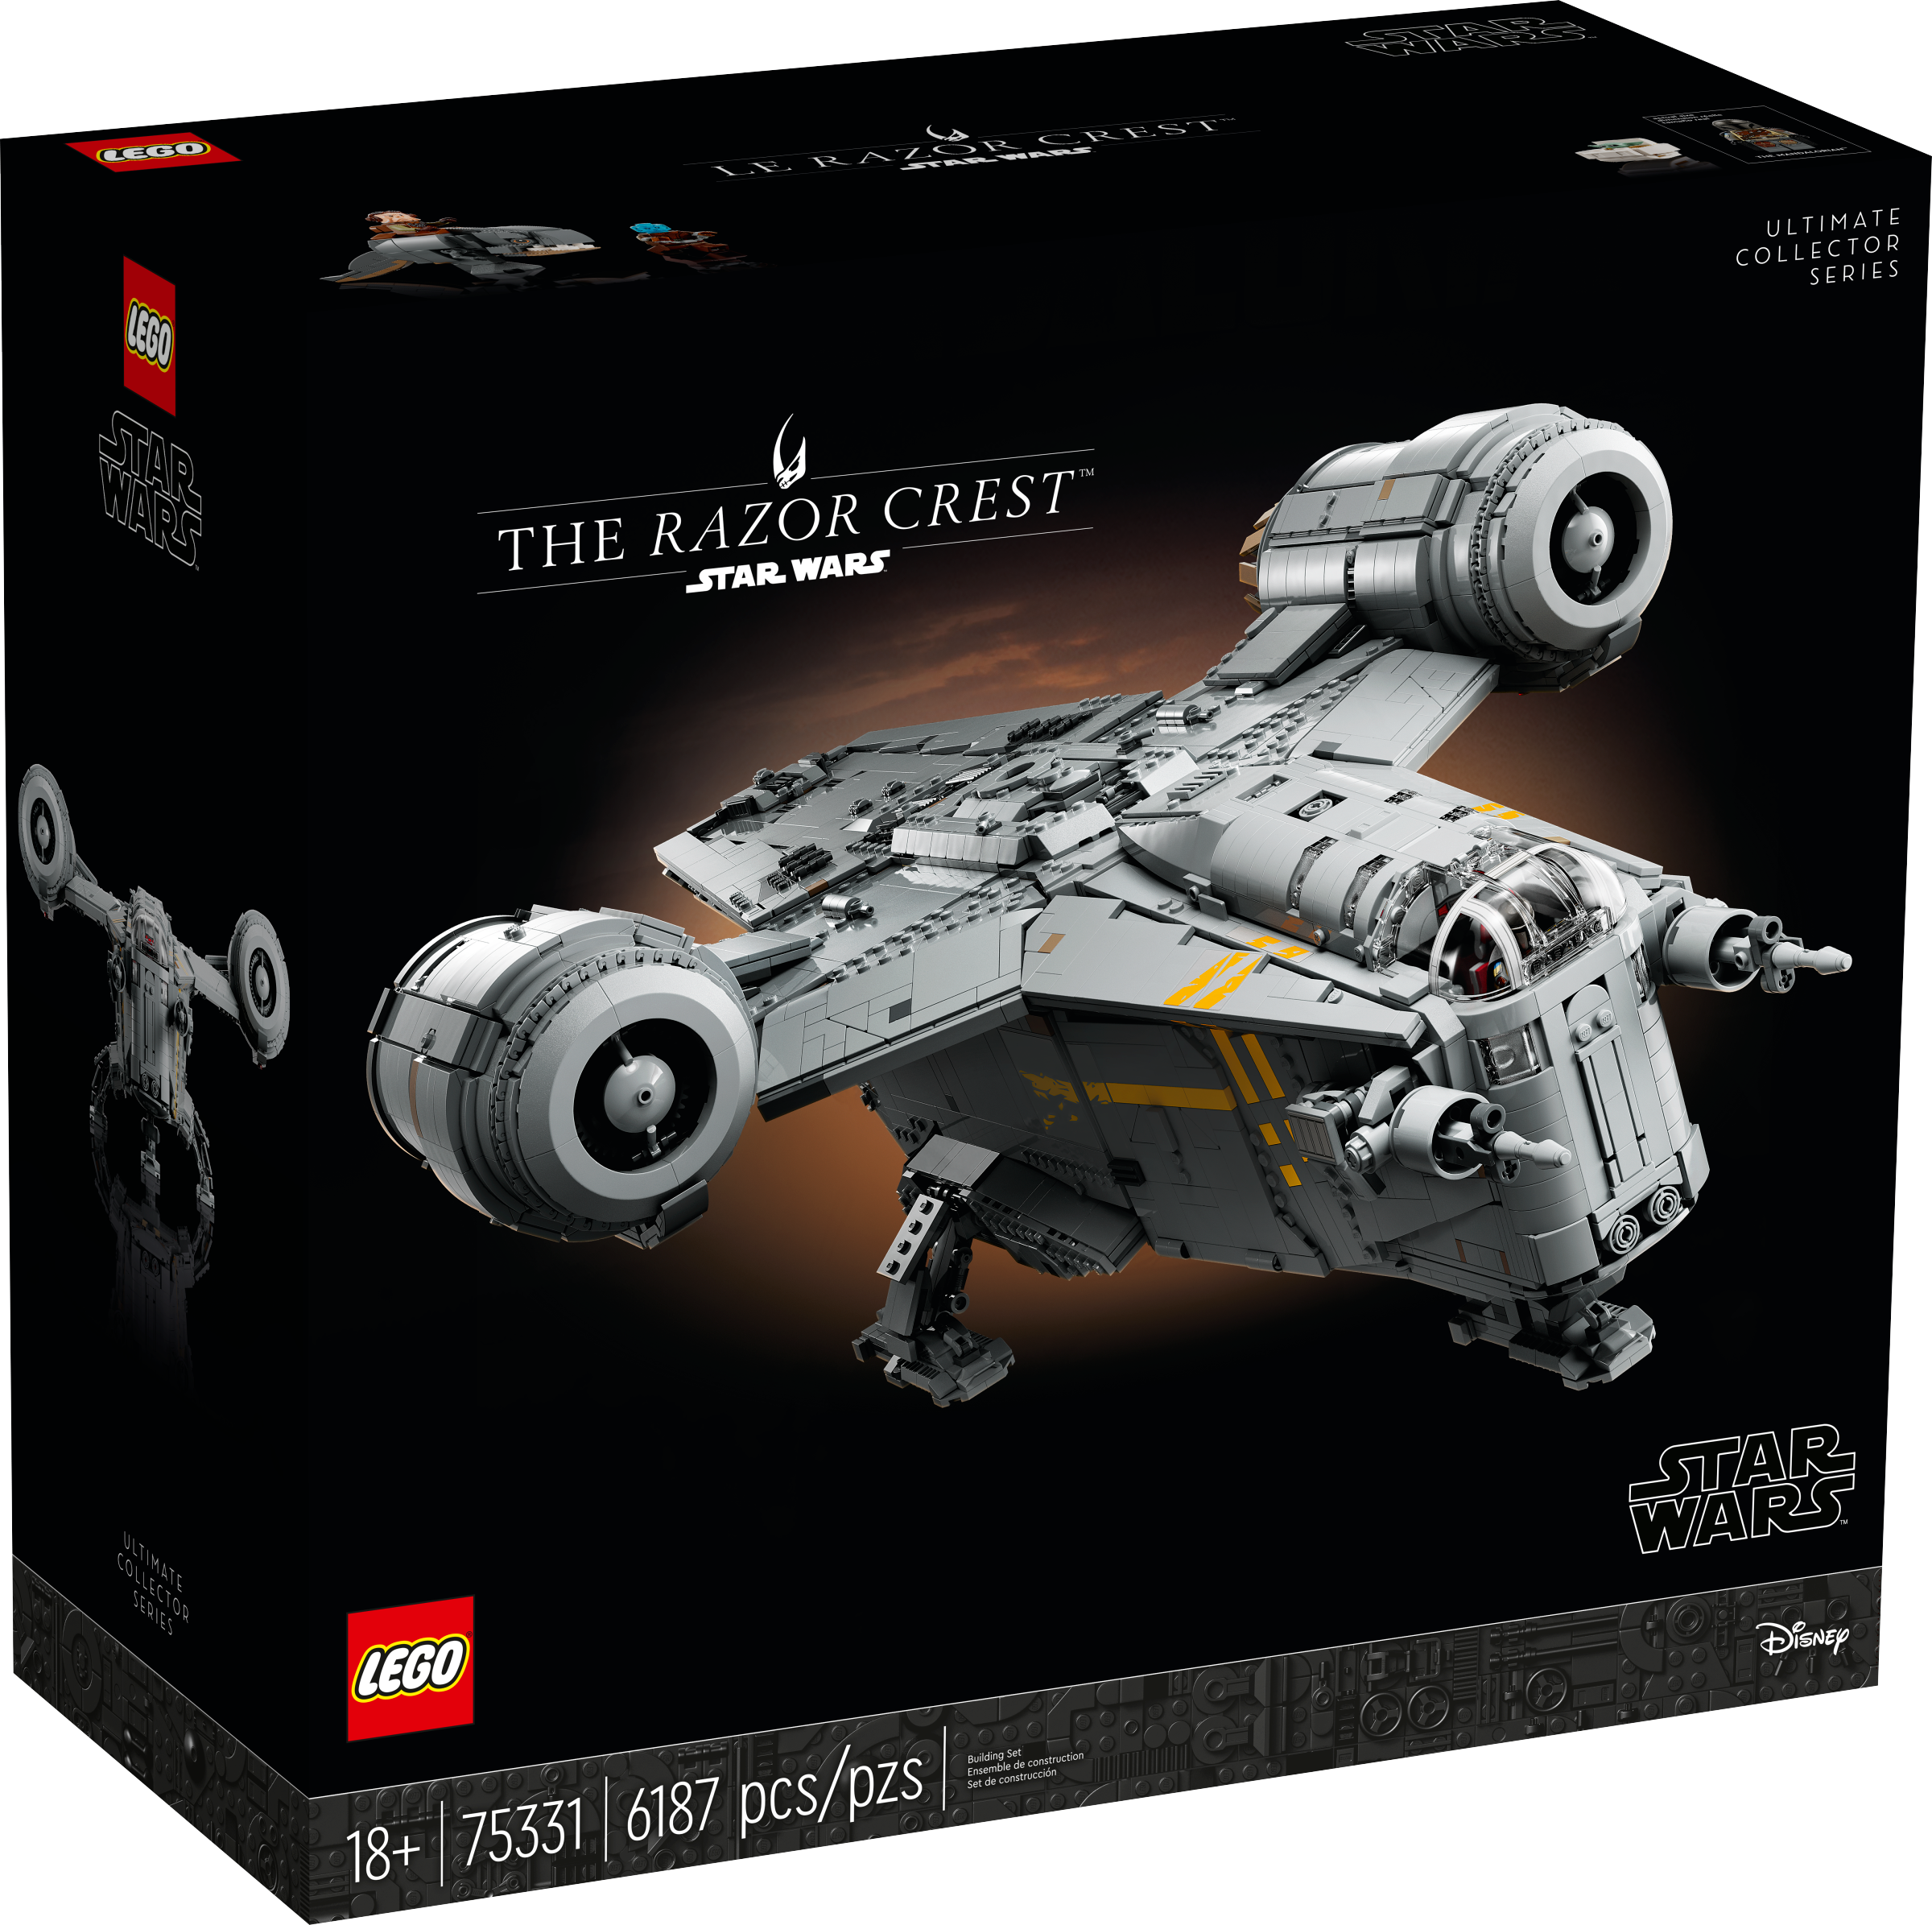 LEGO Star Wars The Razor Crest (75331) - im GOLDSTIEN.SHOP verfügbar mit Gratisversand ab Schweizer Lager! (5702017155579)